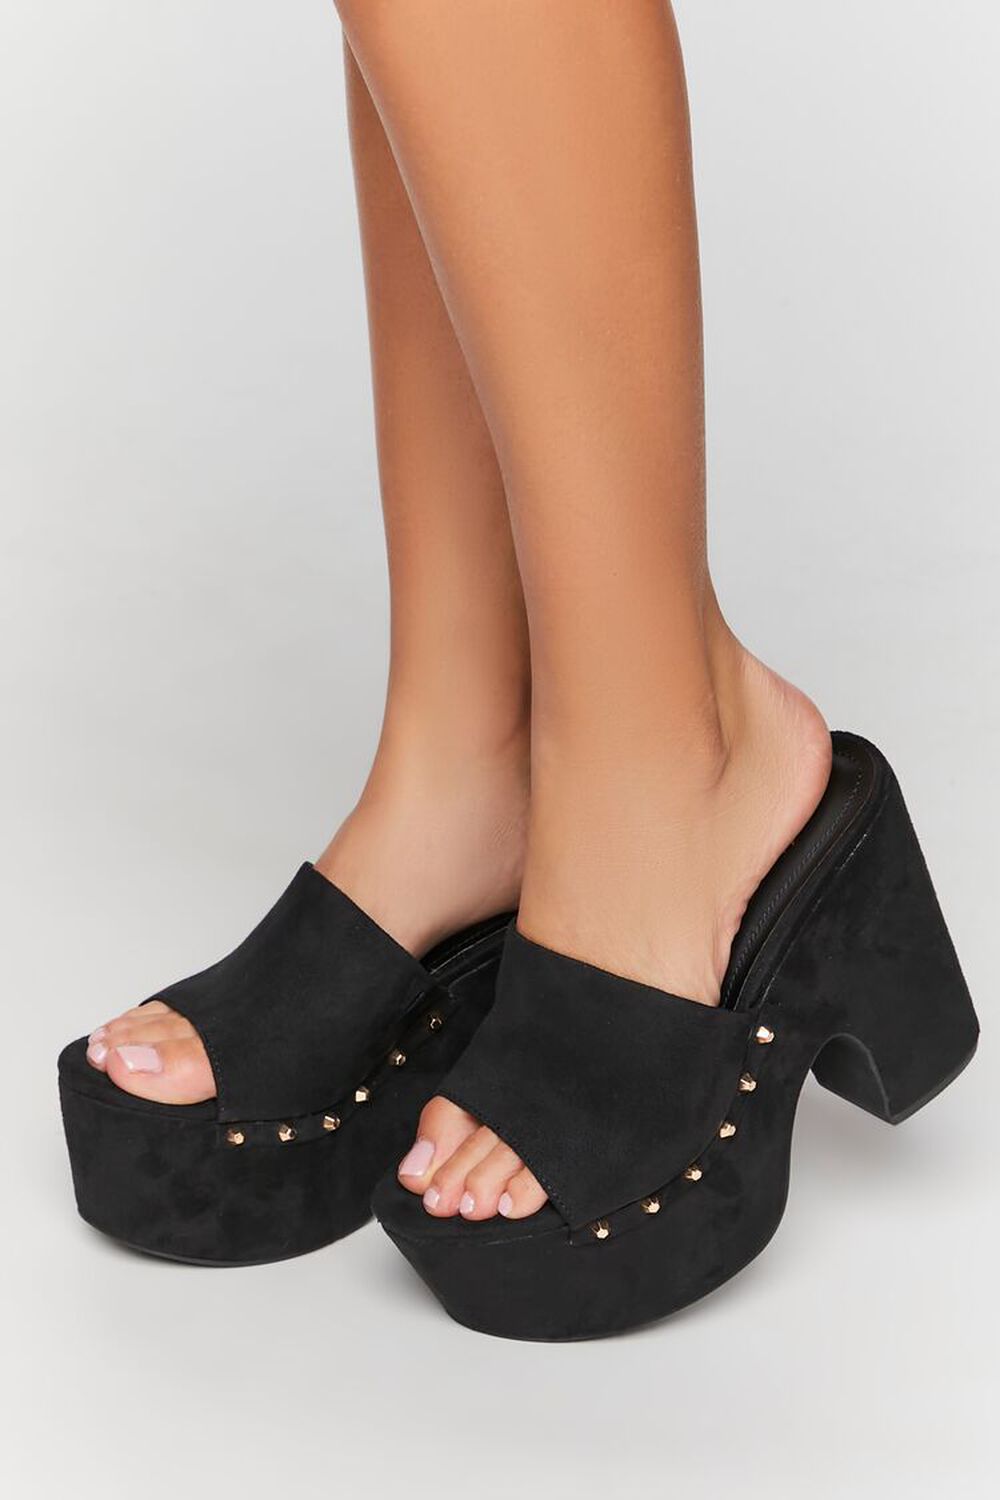 BLACK Studded Platform Clog Heels, image 1